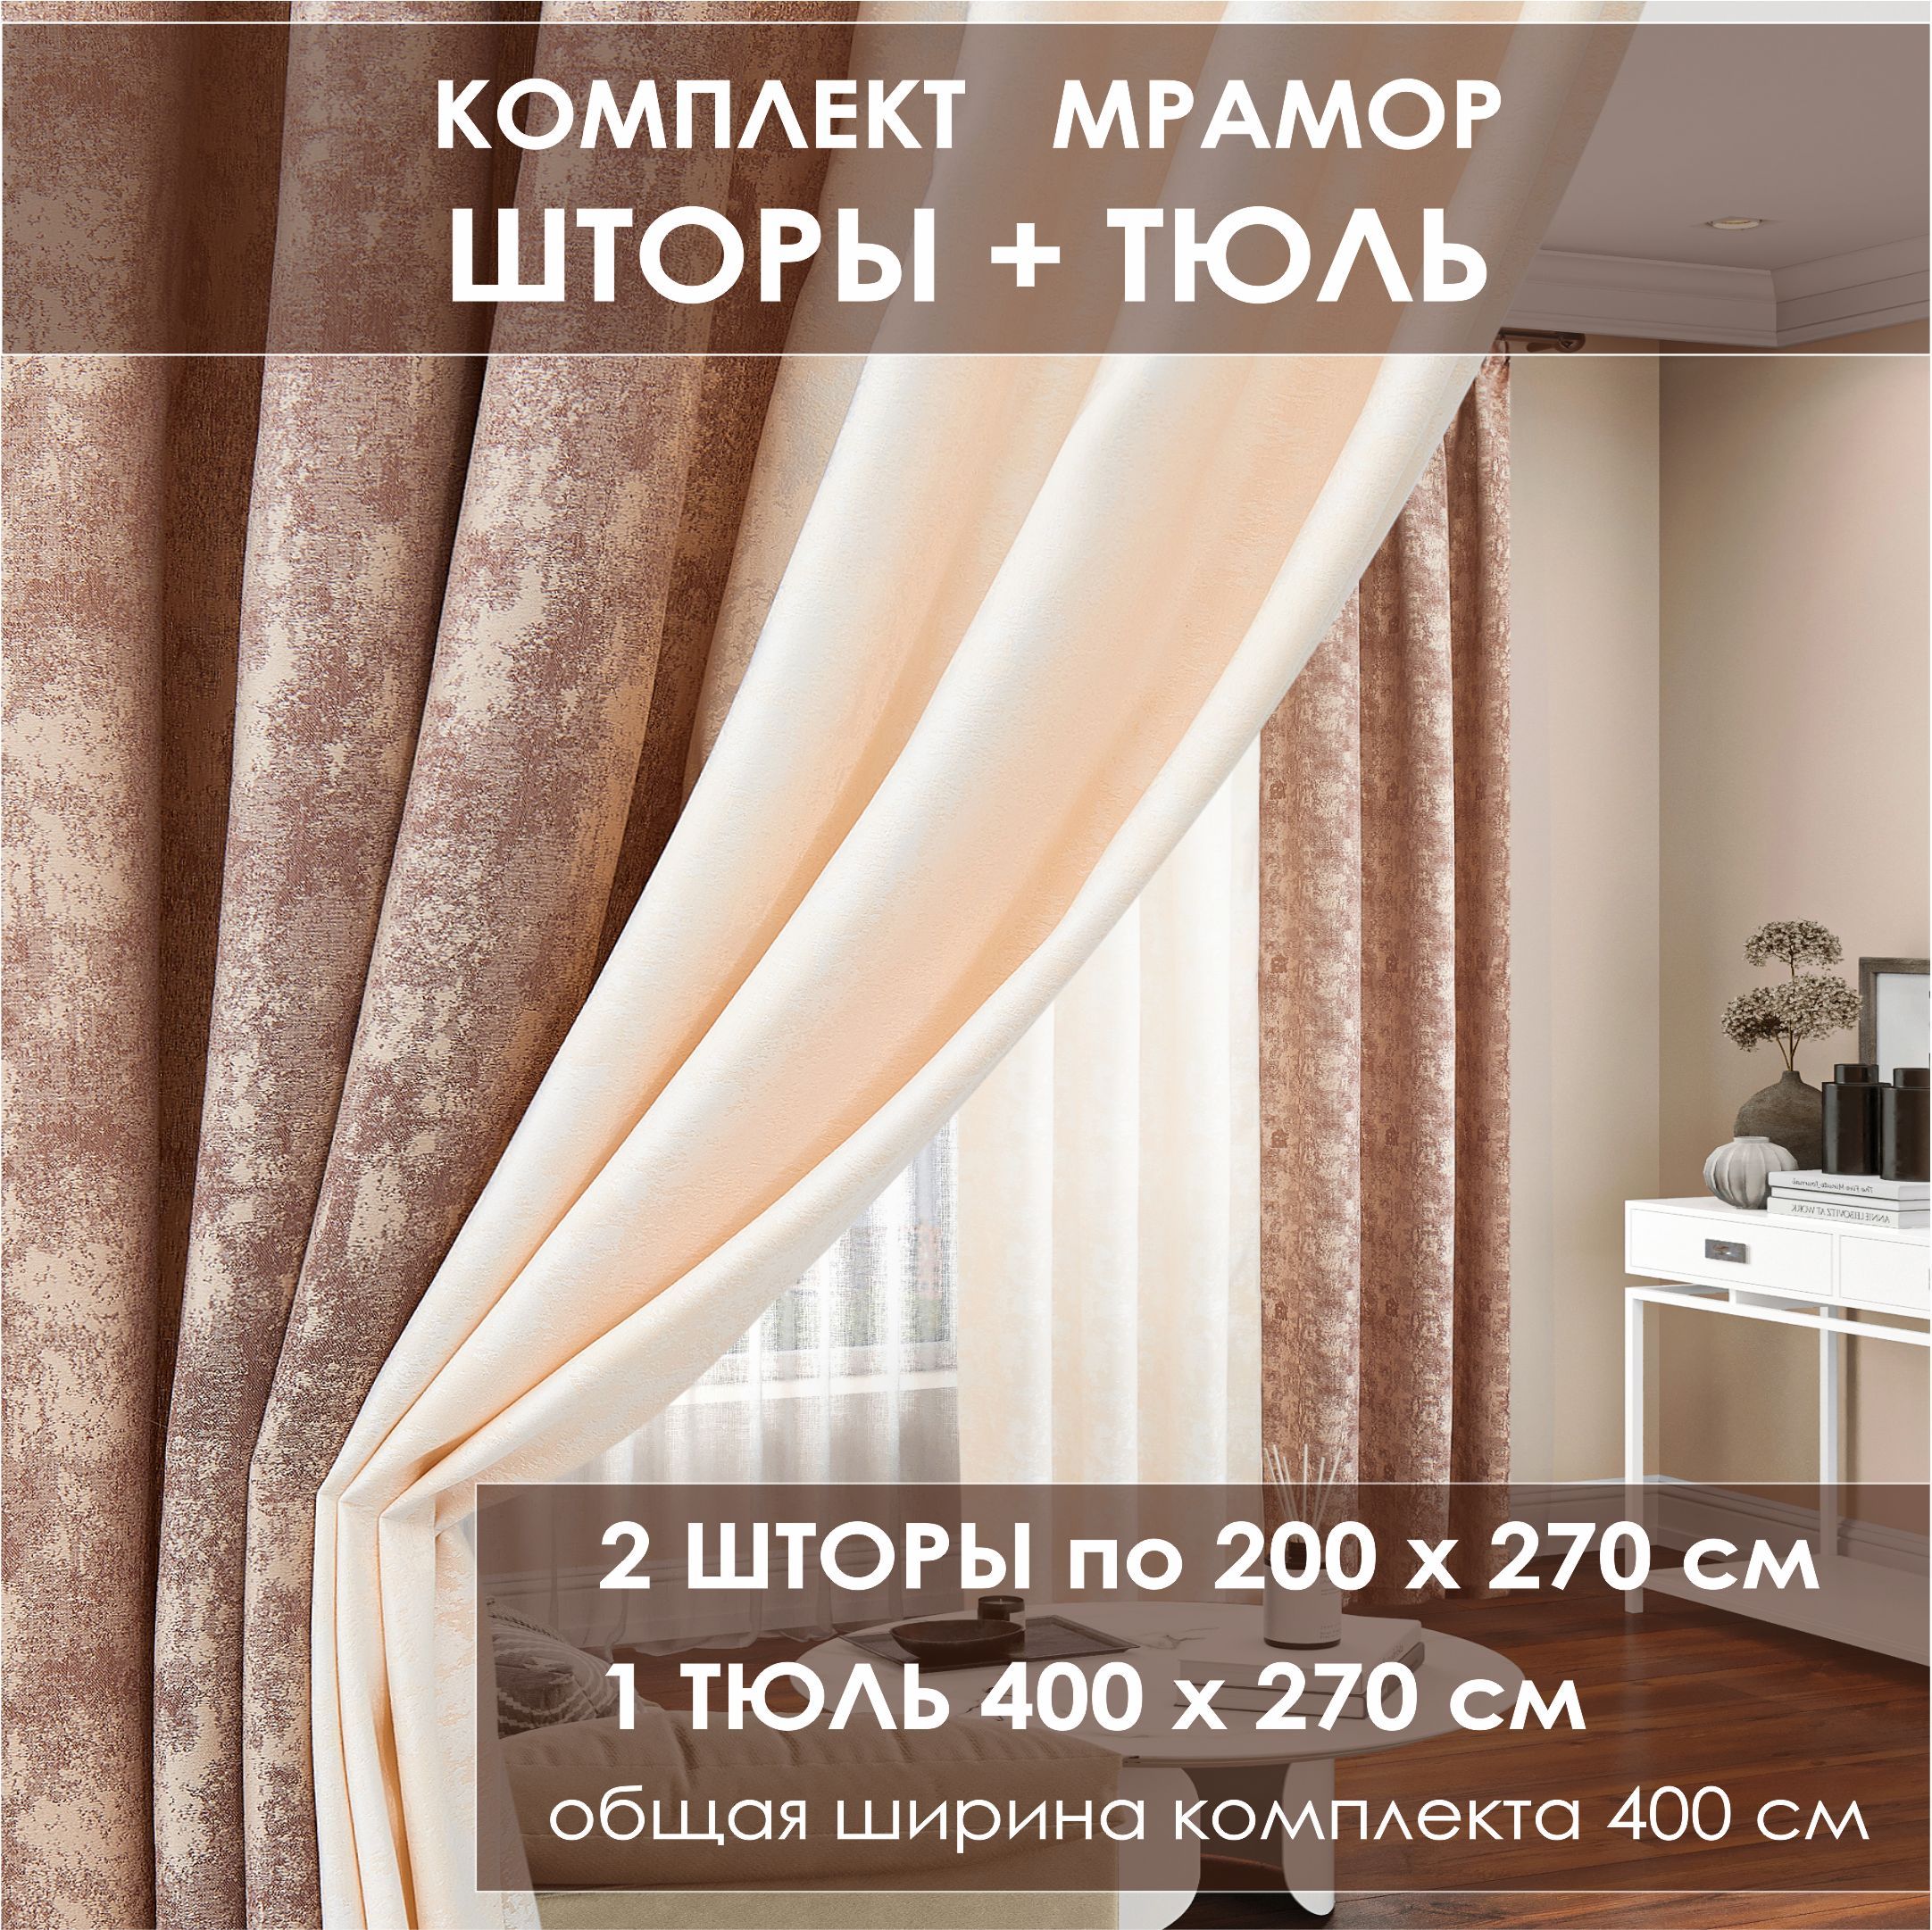 Недорого заказать шторы – купить в интернет магазине Shadow в Москве